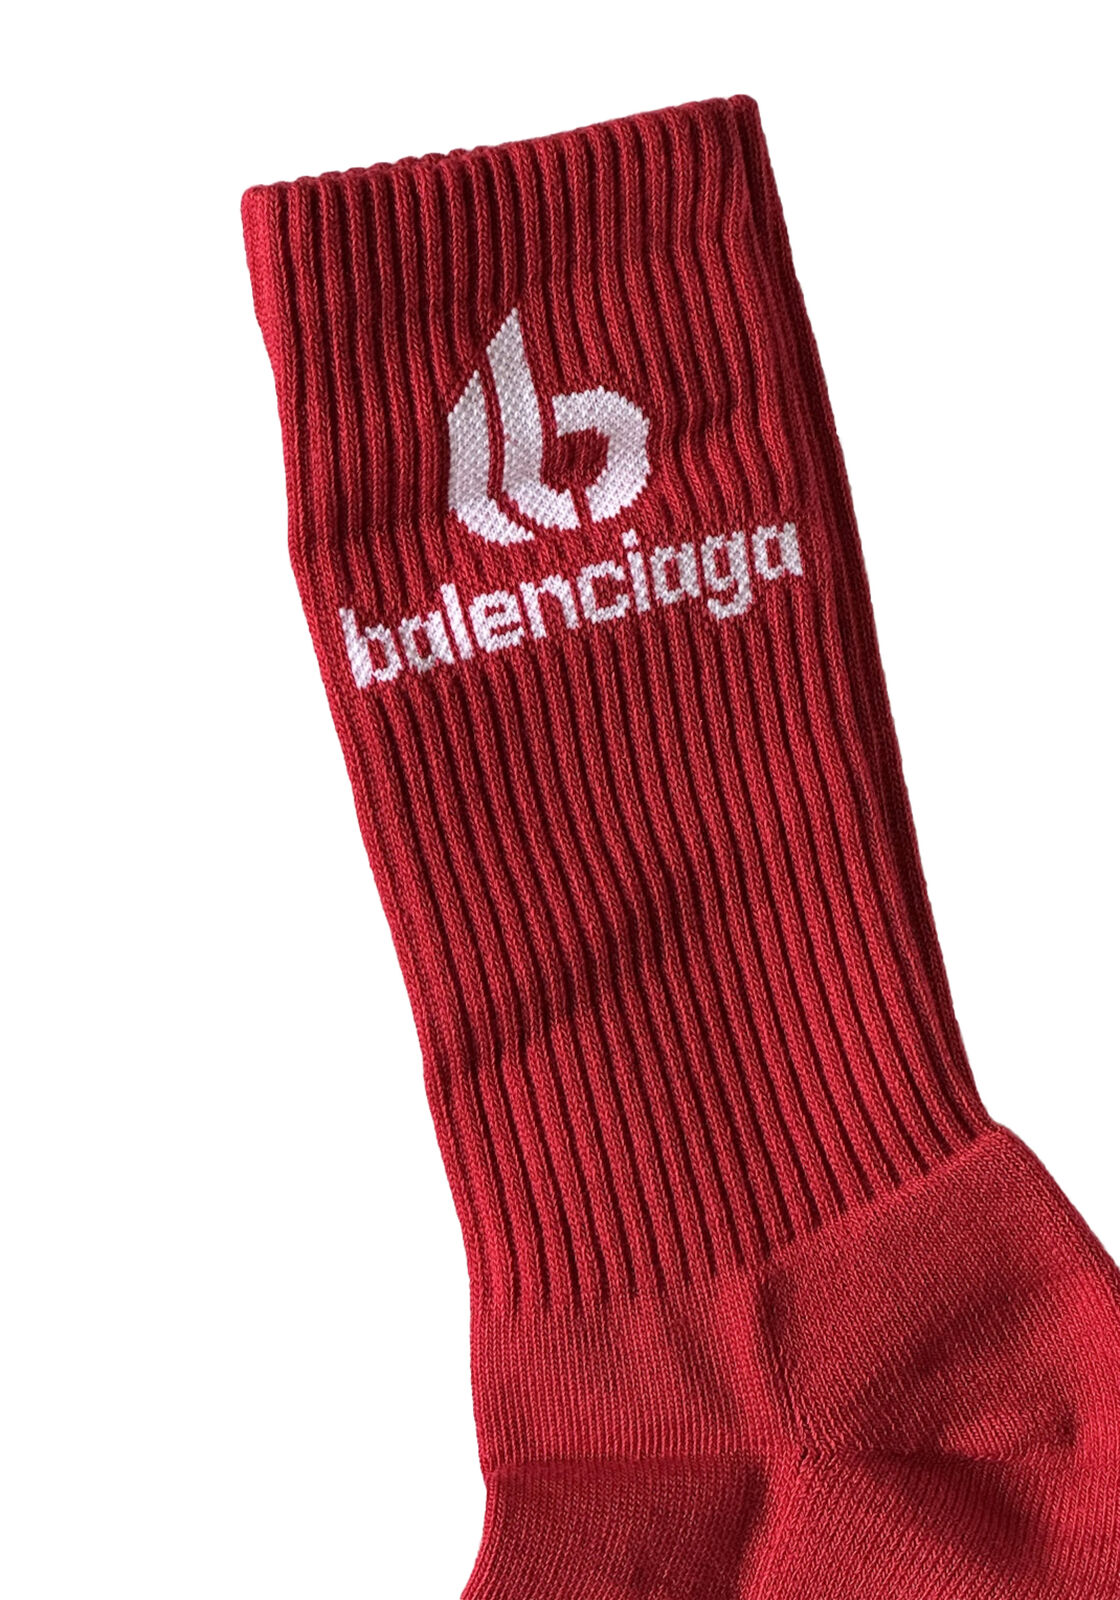 Теннисные носки Balenciaga Logo, красные, большие (12 долларов США), NWT, 150 долларов США, сделано в Португалии 